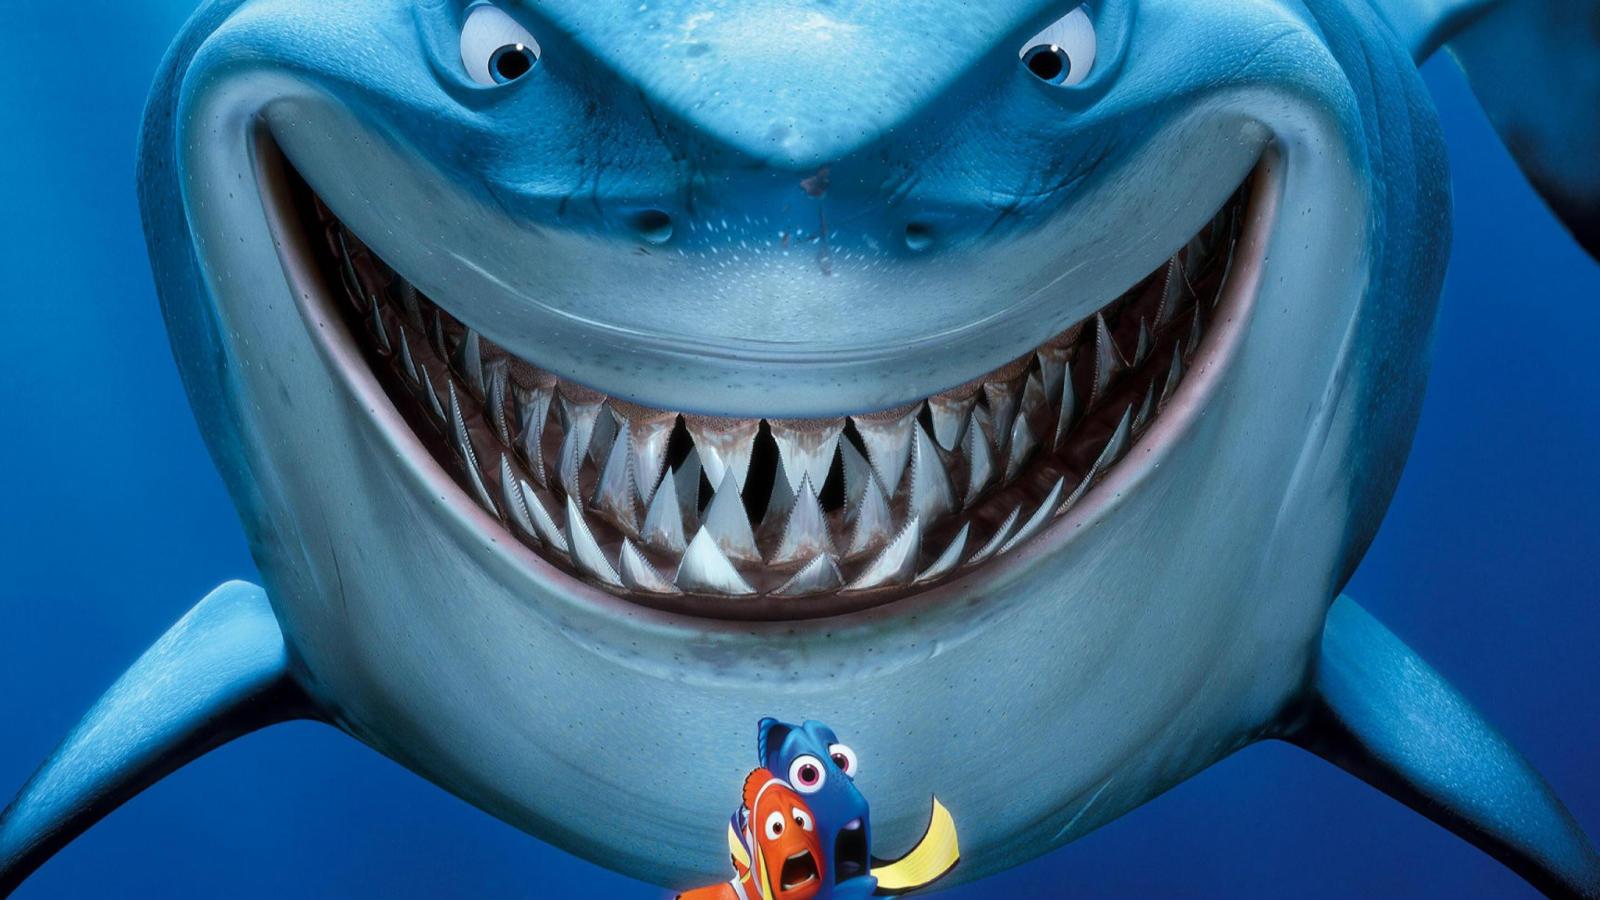 吴京、杰森·斯坦森首度合作《巨齿鲨2》发预告，定档8月4日_怪兽_海洋_电影